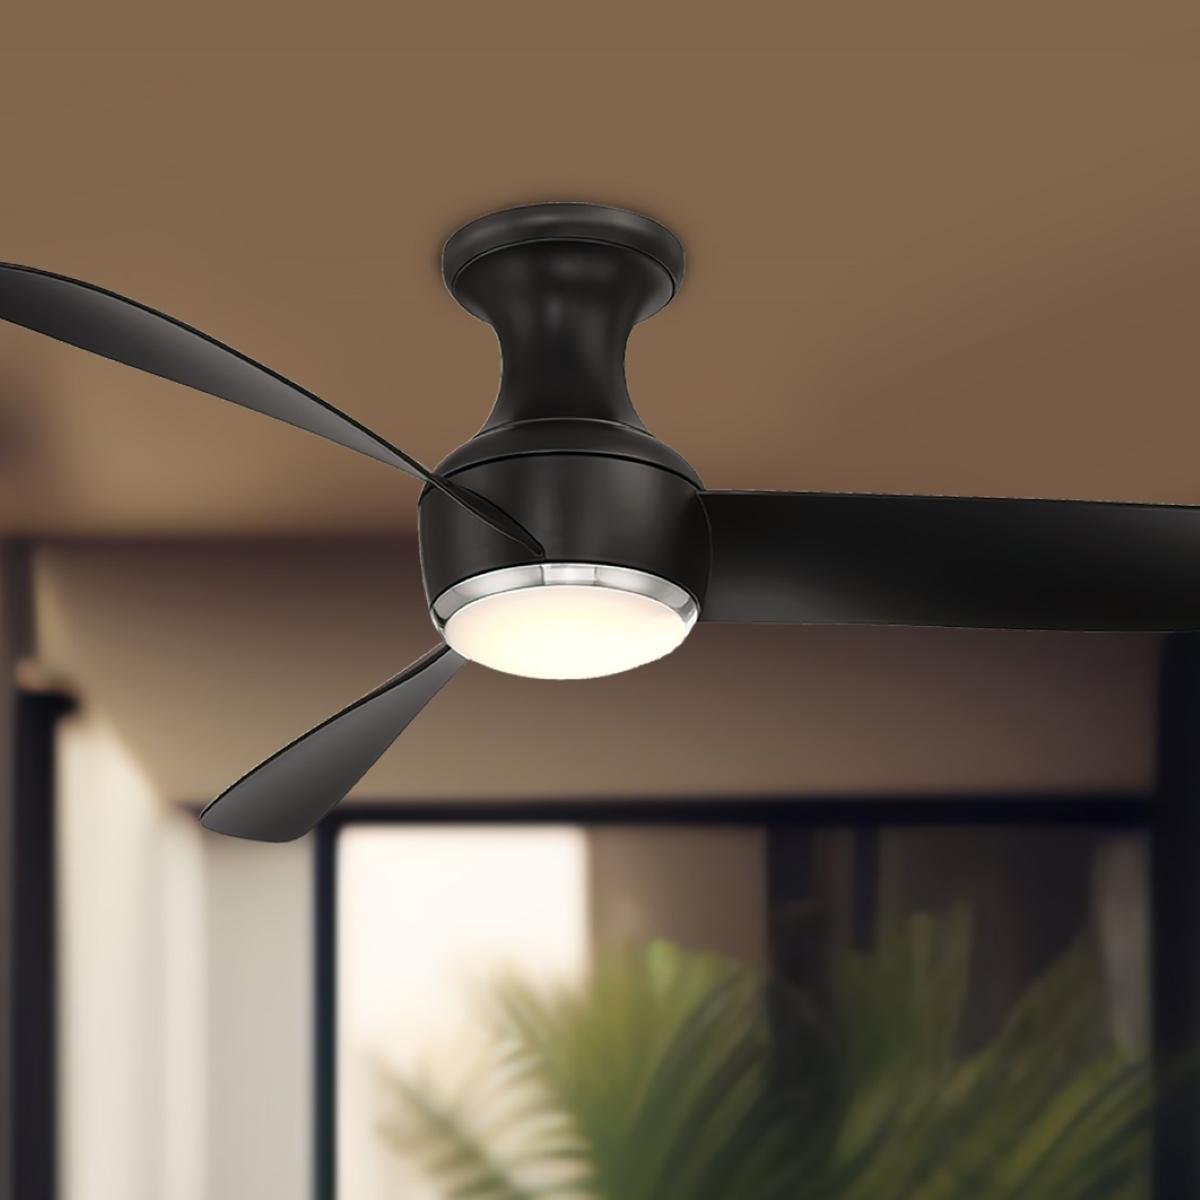 Modern Forms - Corona 52 Inch Modern Outdoor Smart Ceiling Fan